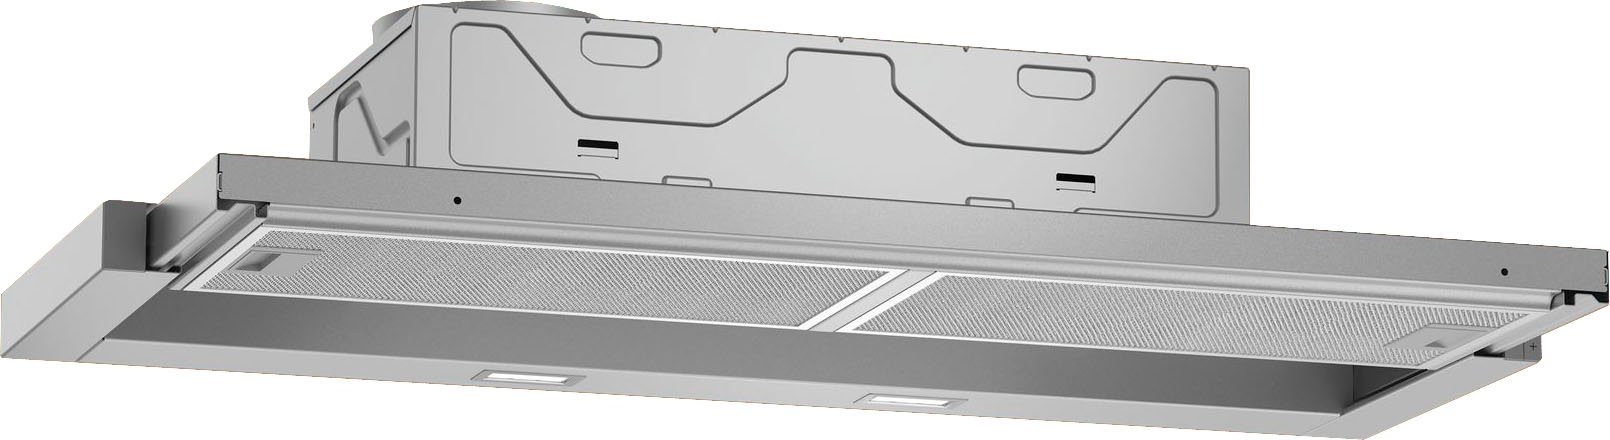 [Günstigstes und Bestes] NEFF Flachschirmhaube Serie 50 D49ED22X1, fein Elektronik-Steuerung dosierbare Hohe, durch N Luftleistung